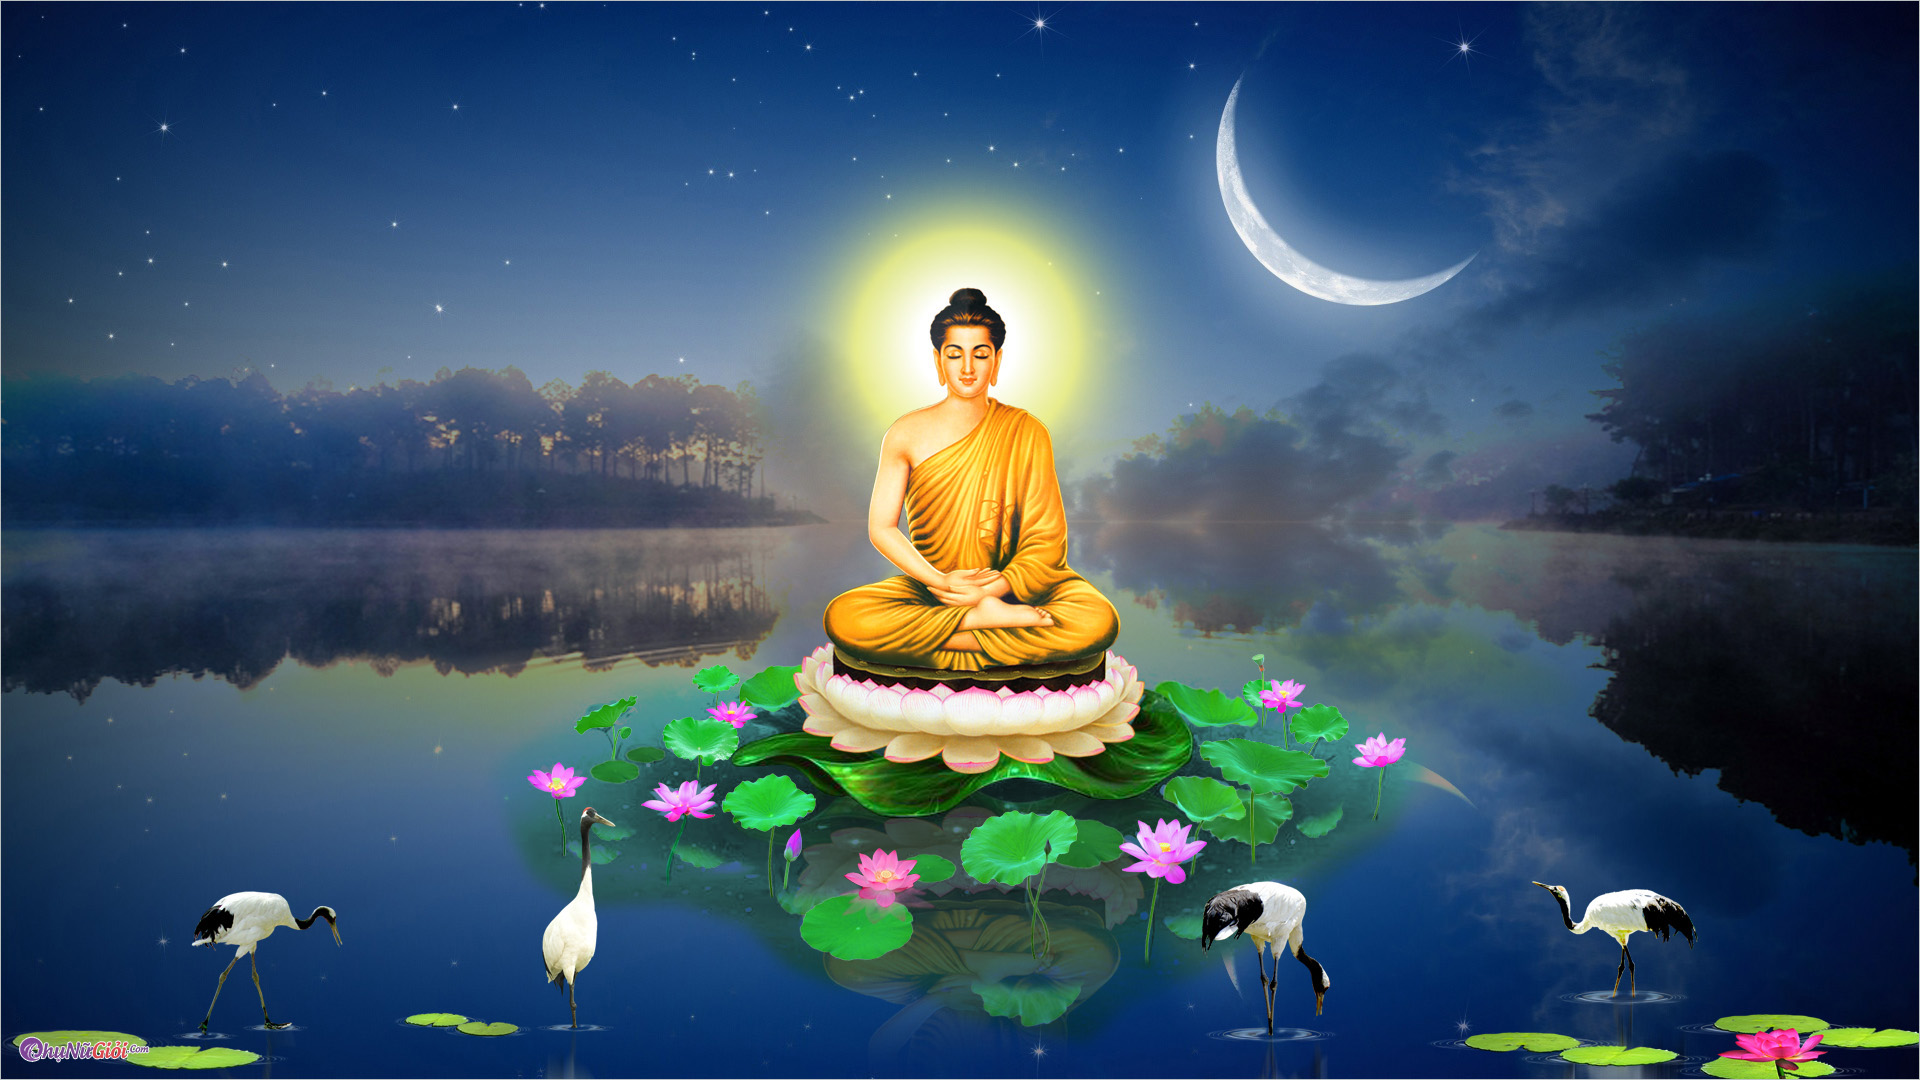 Phật Thích Ca Mâu Ni: Nếu bạn muốn tìm hiểu về người sáng lập ra đạo Phật và người được tôn sùng rộng rãi, hãy xem hình ảnh về Phật Thích Ca Mâu Ni. Hình ảnh này sẽ giúp bạn khám phá rõ hơn về tâm linh và đạo Phật.